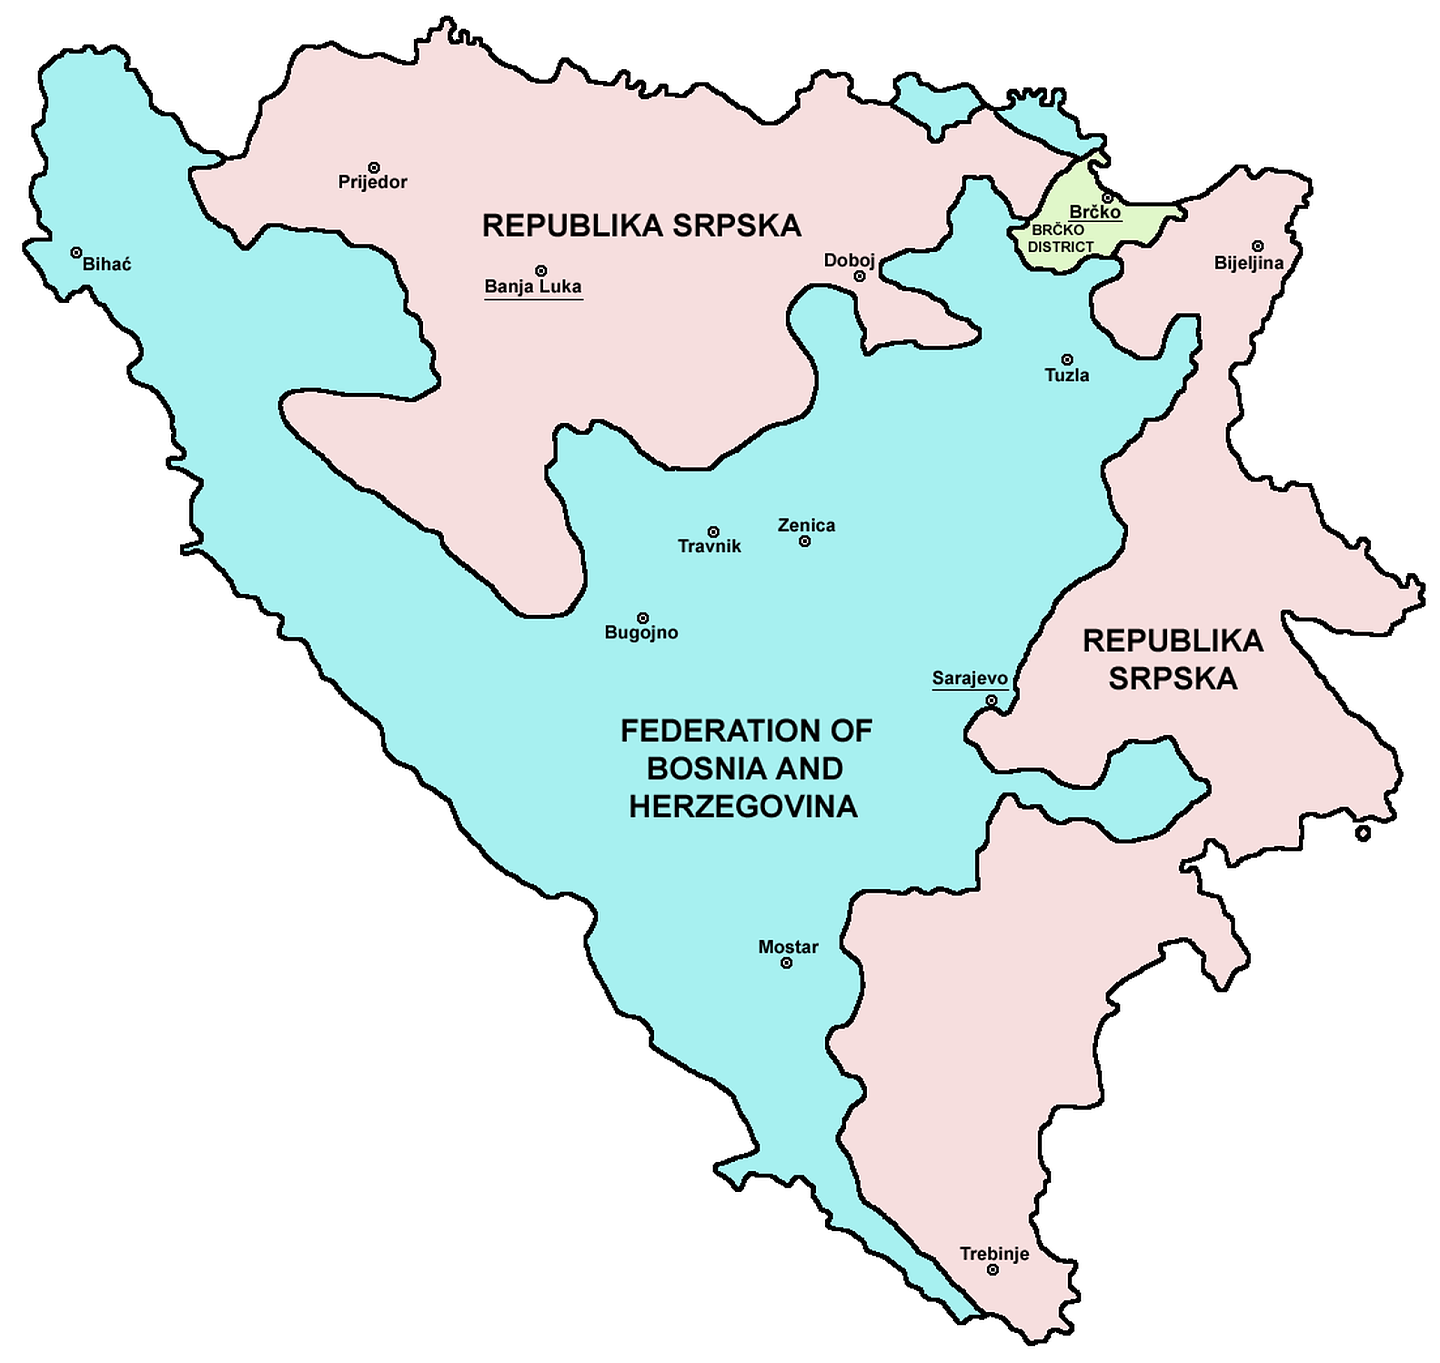 图中浅蓝色处为波黑联邦，浅红色处为塞族共和国。塞族力量在战争期间占有更多土地，却在北约力量的压力下被迫放弃。（Wikimedia Commons）